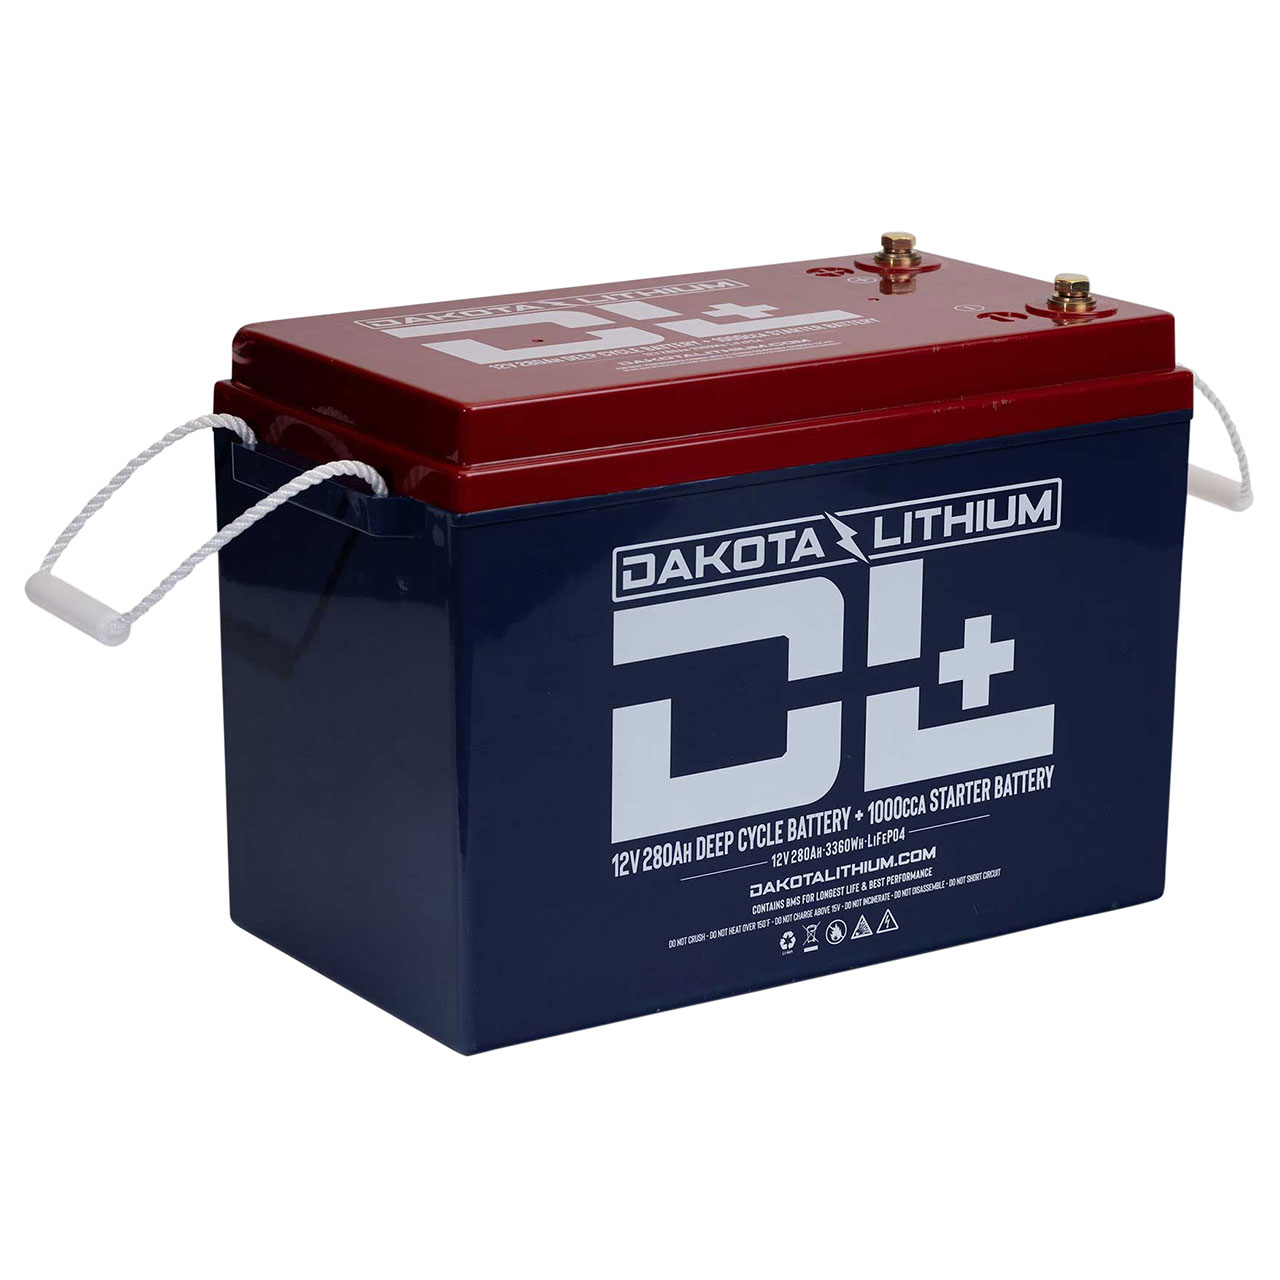 Dakota Lithium DL+ 12v 280Ah Battery - Group 31